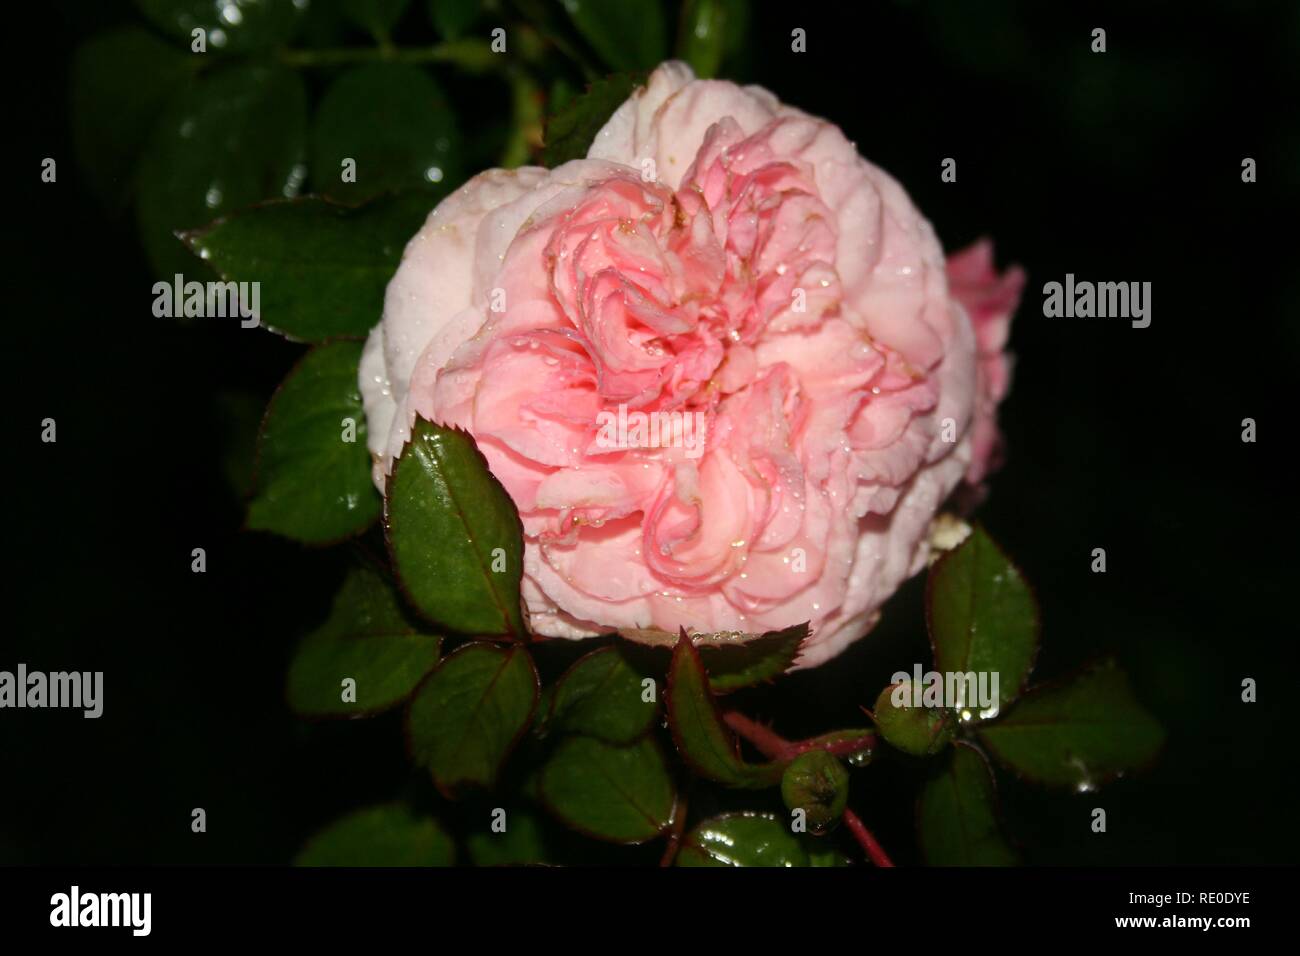 Midnight rose of Burano Stock Photo